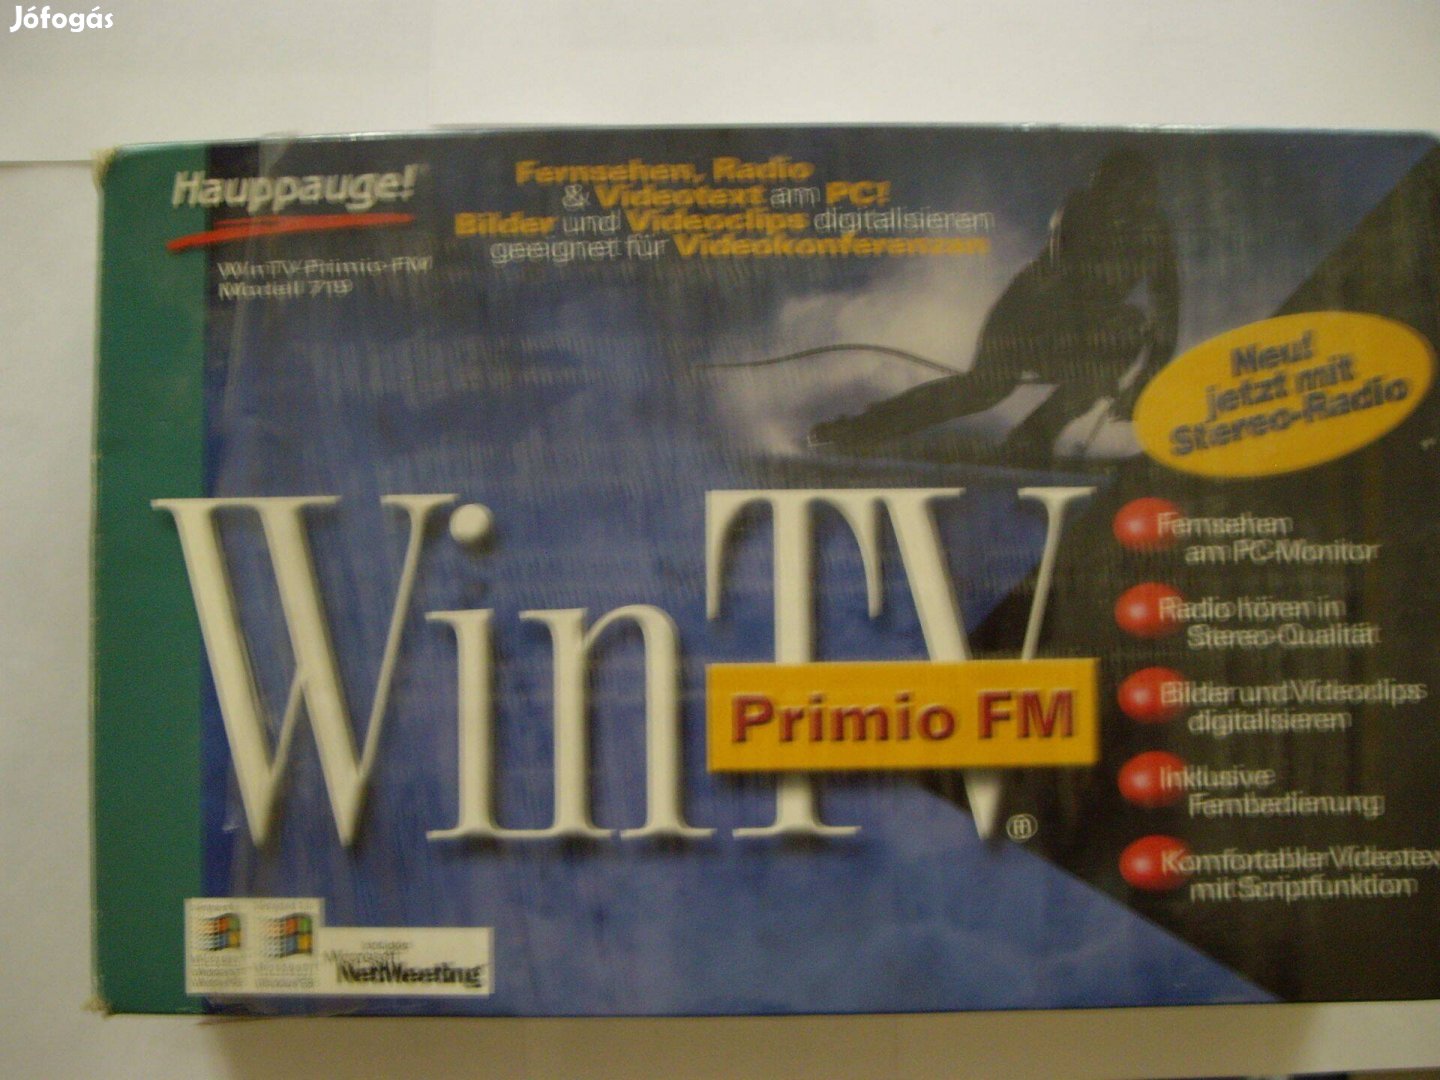 Hauppauge Wintv-Primio-FM TV tuner kártya eladó